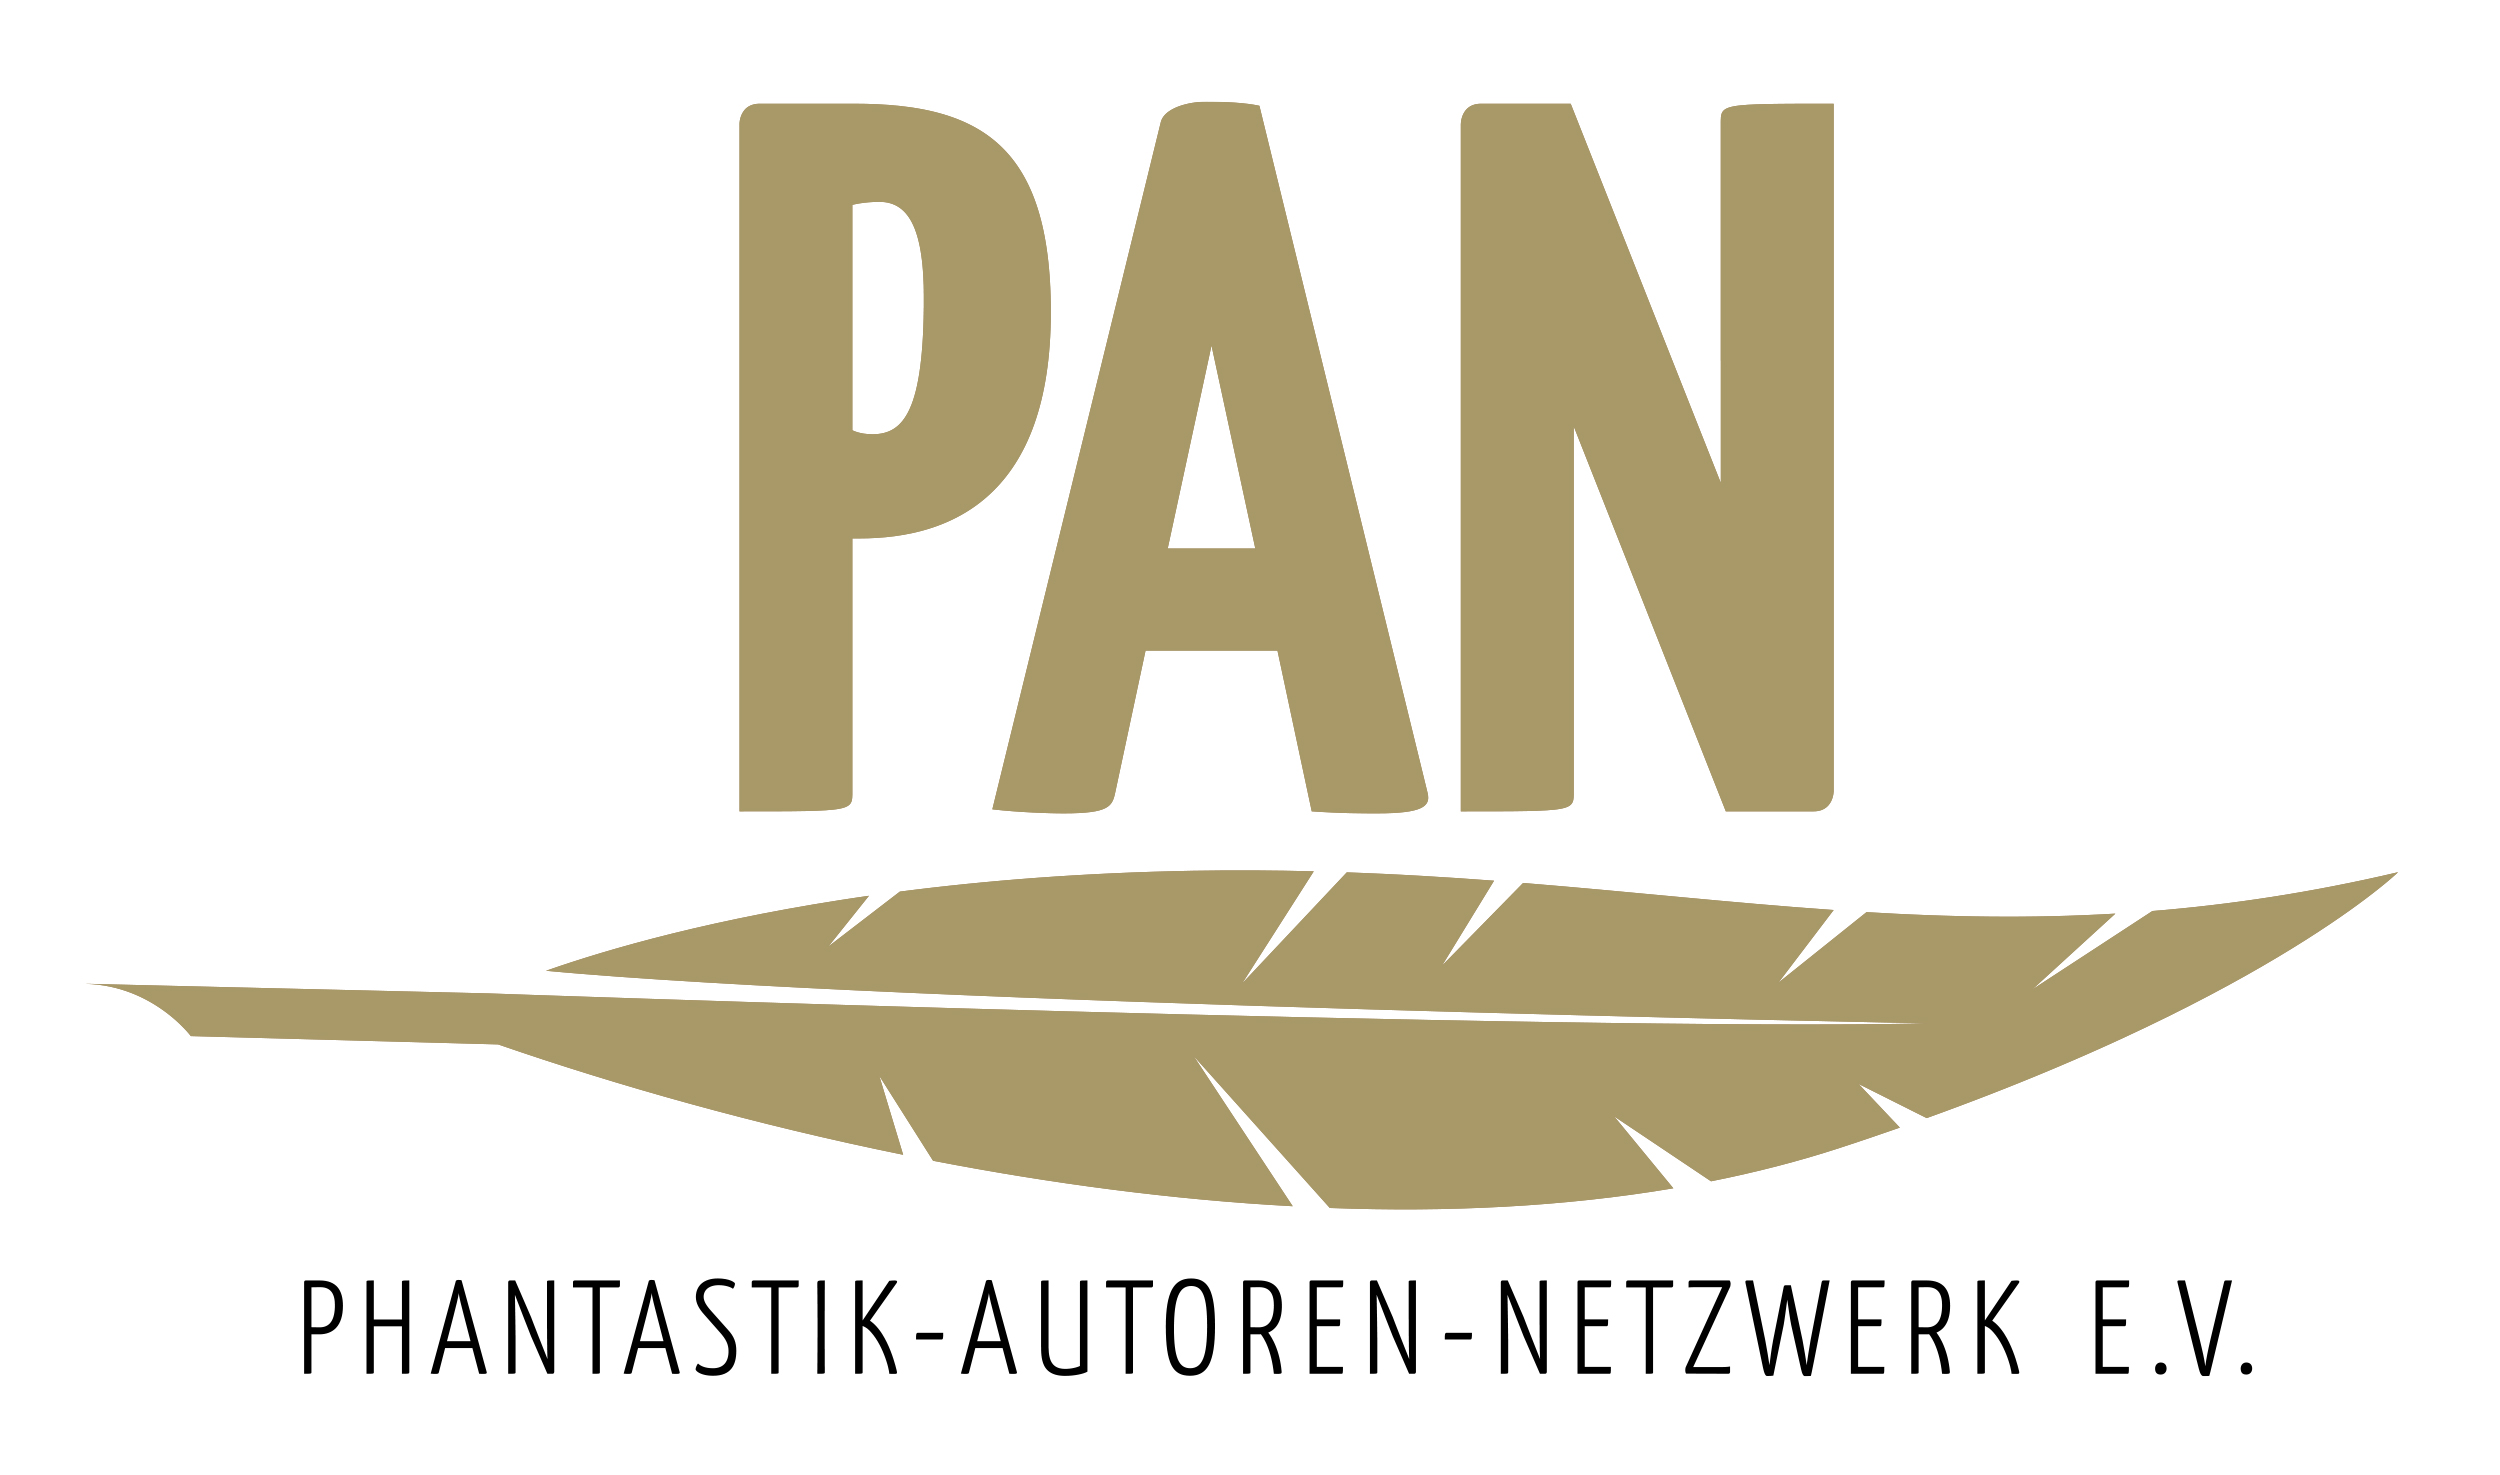 Phantastik-Autoren-Netzwerk_Logo_mit-Schriftzug_sRGB_2500x1475.jpg